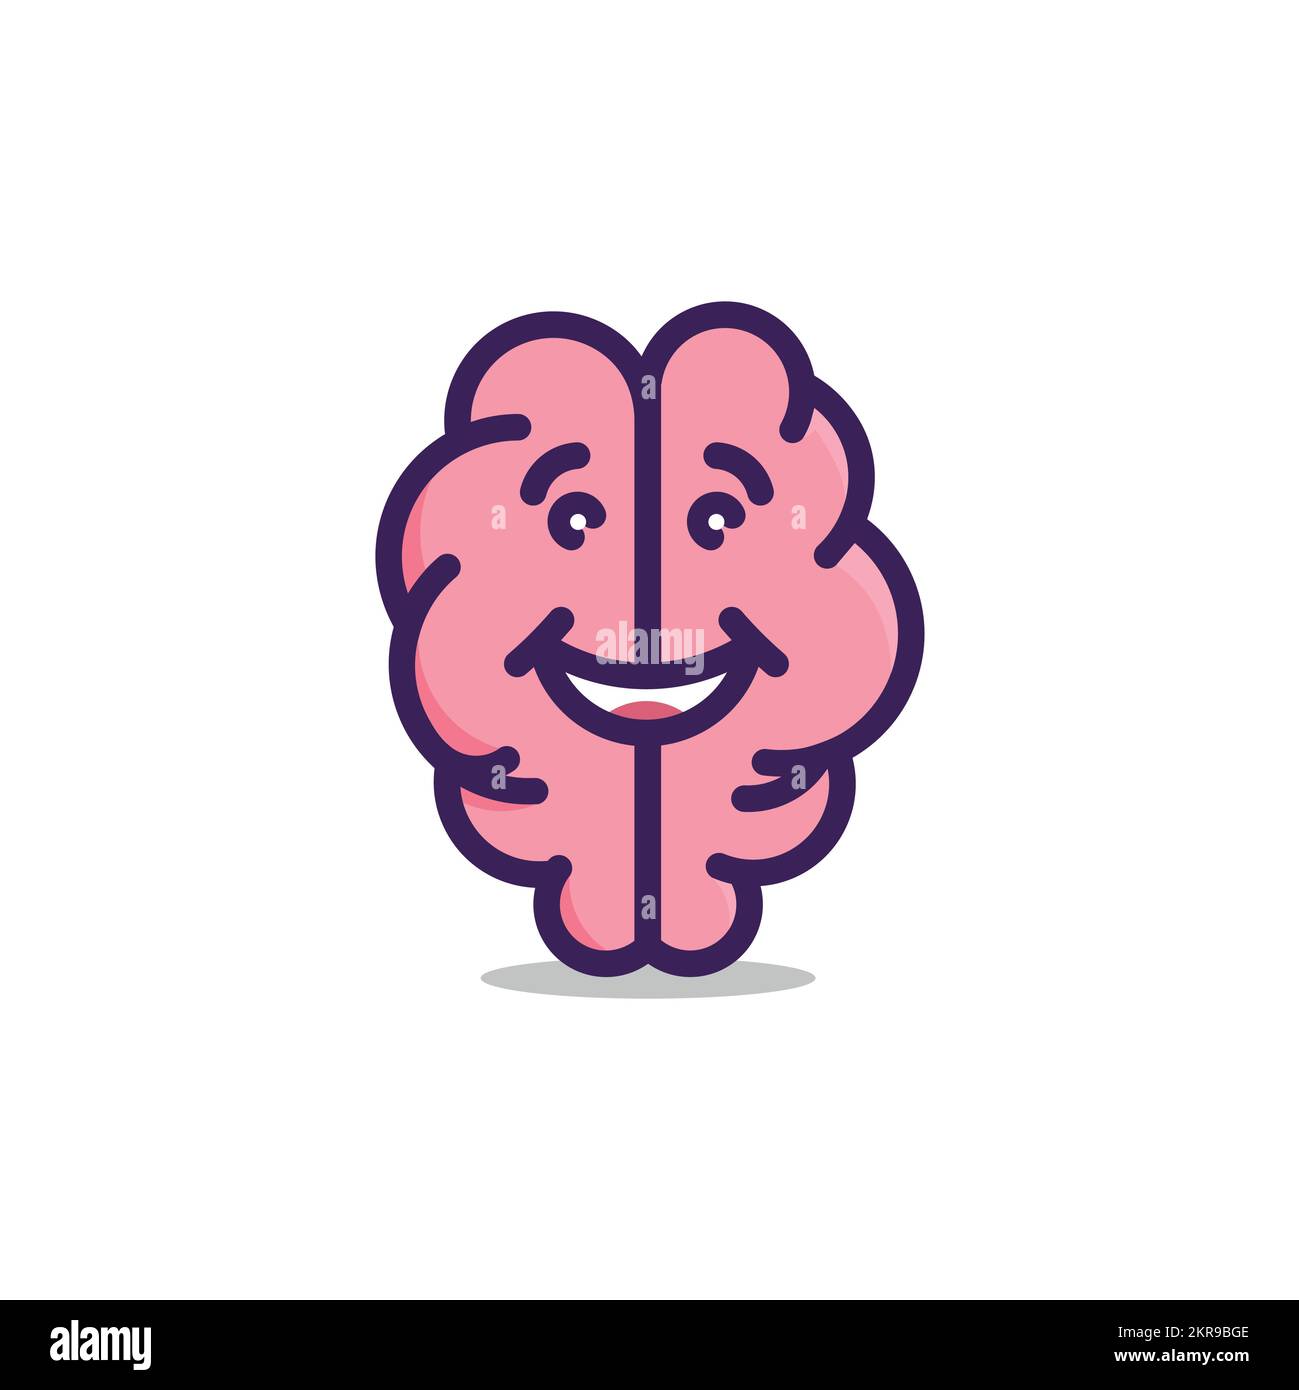 Conception abstraite du logo du cerveau, logotype pour la neurologie, la psychologie, le counseling Illustration de Vecteur